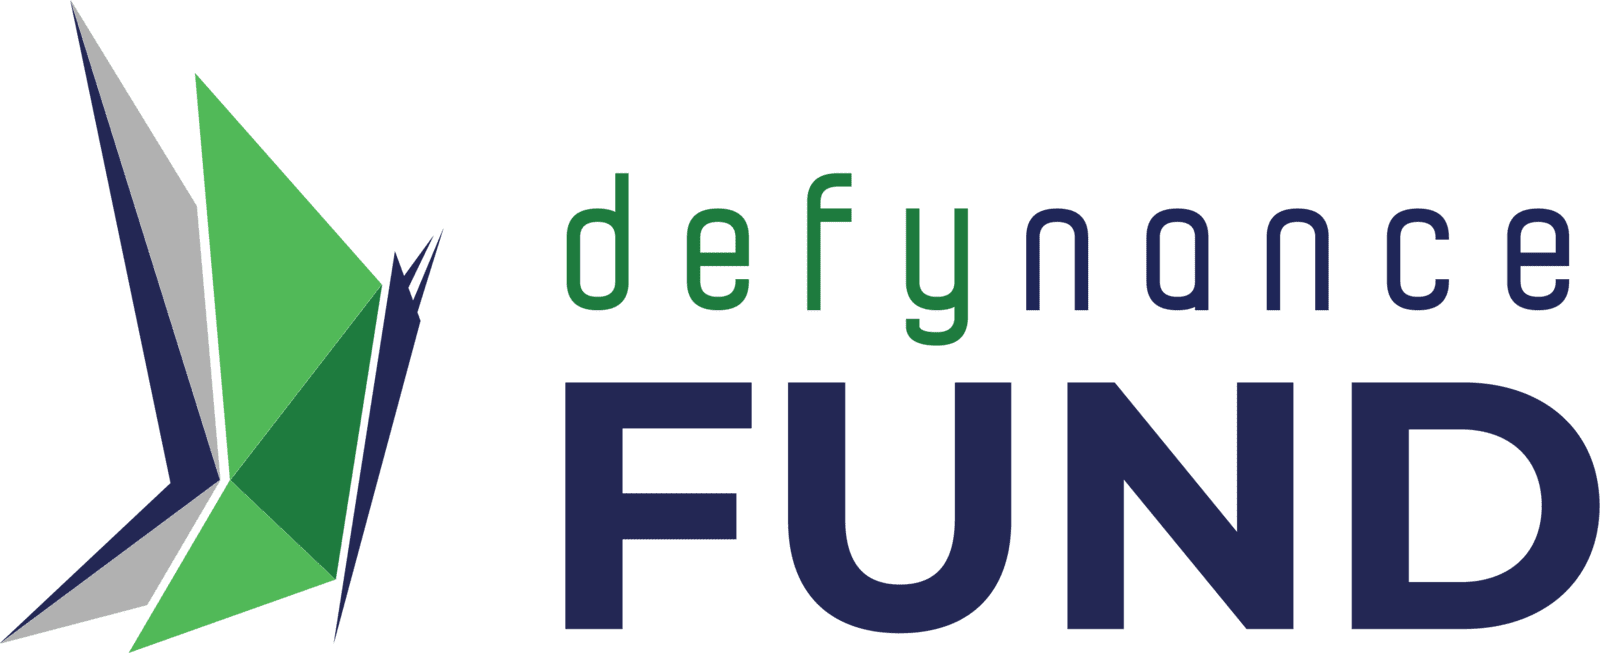 Defynance Fund